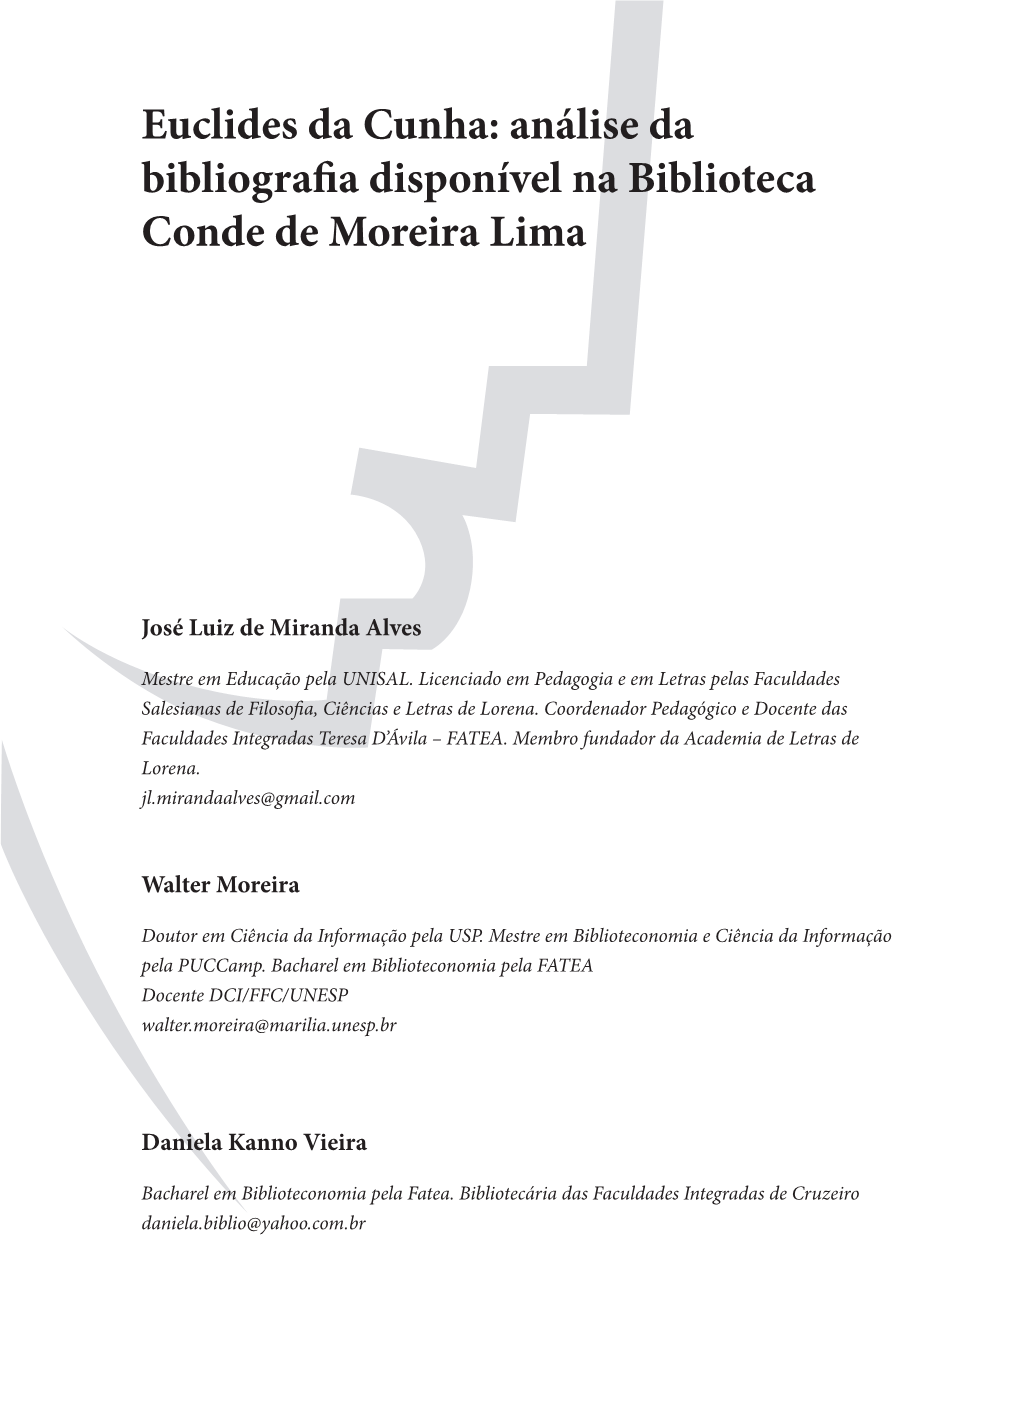 Euclides Da Cunha: Análise Da Bibliografia Disponível Na Biblioteca Conde De Moreira Lima